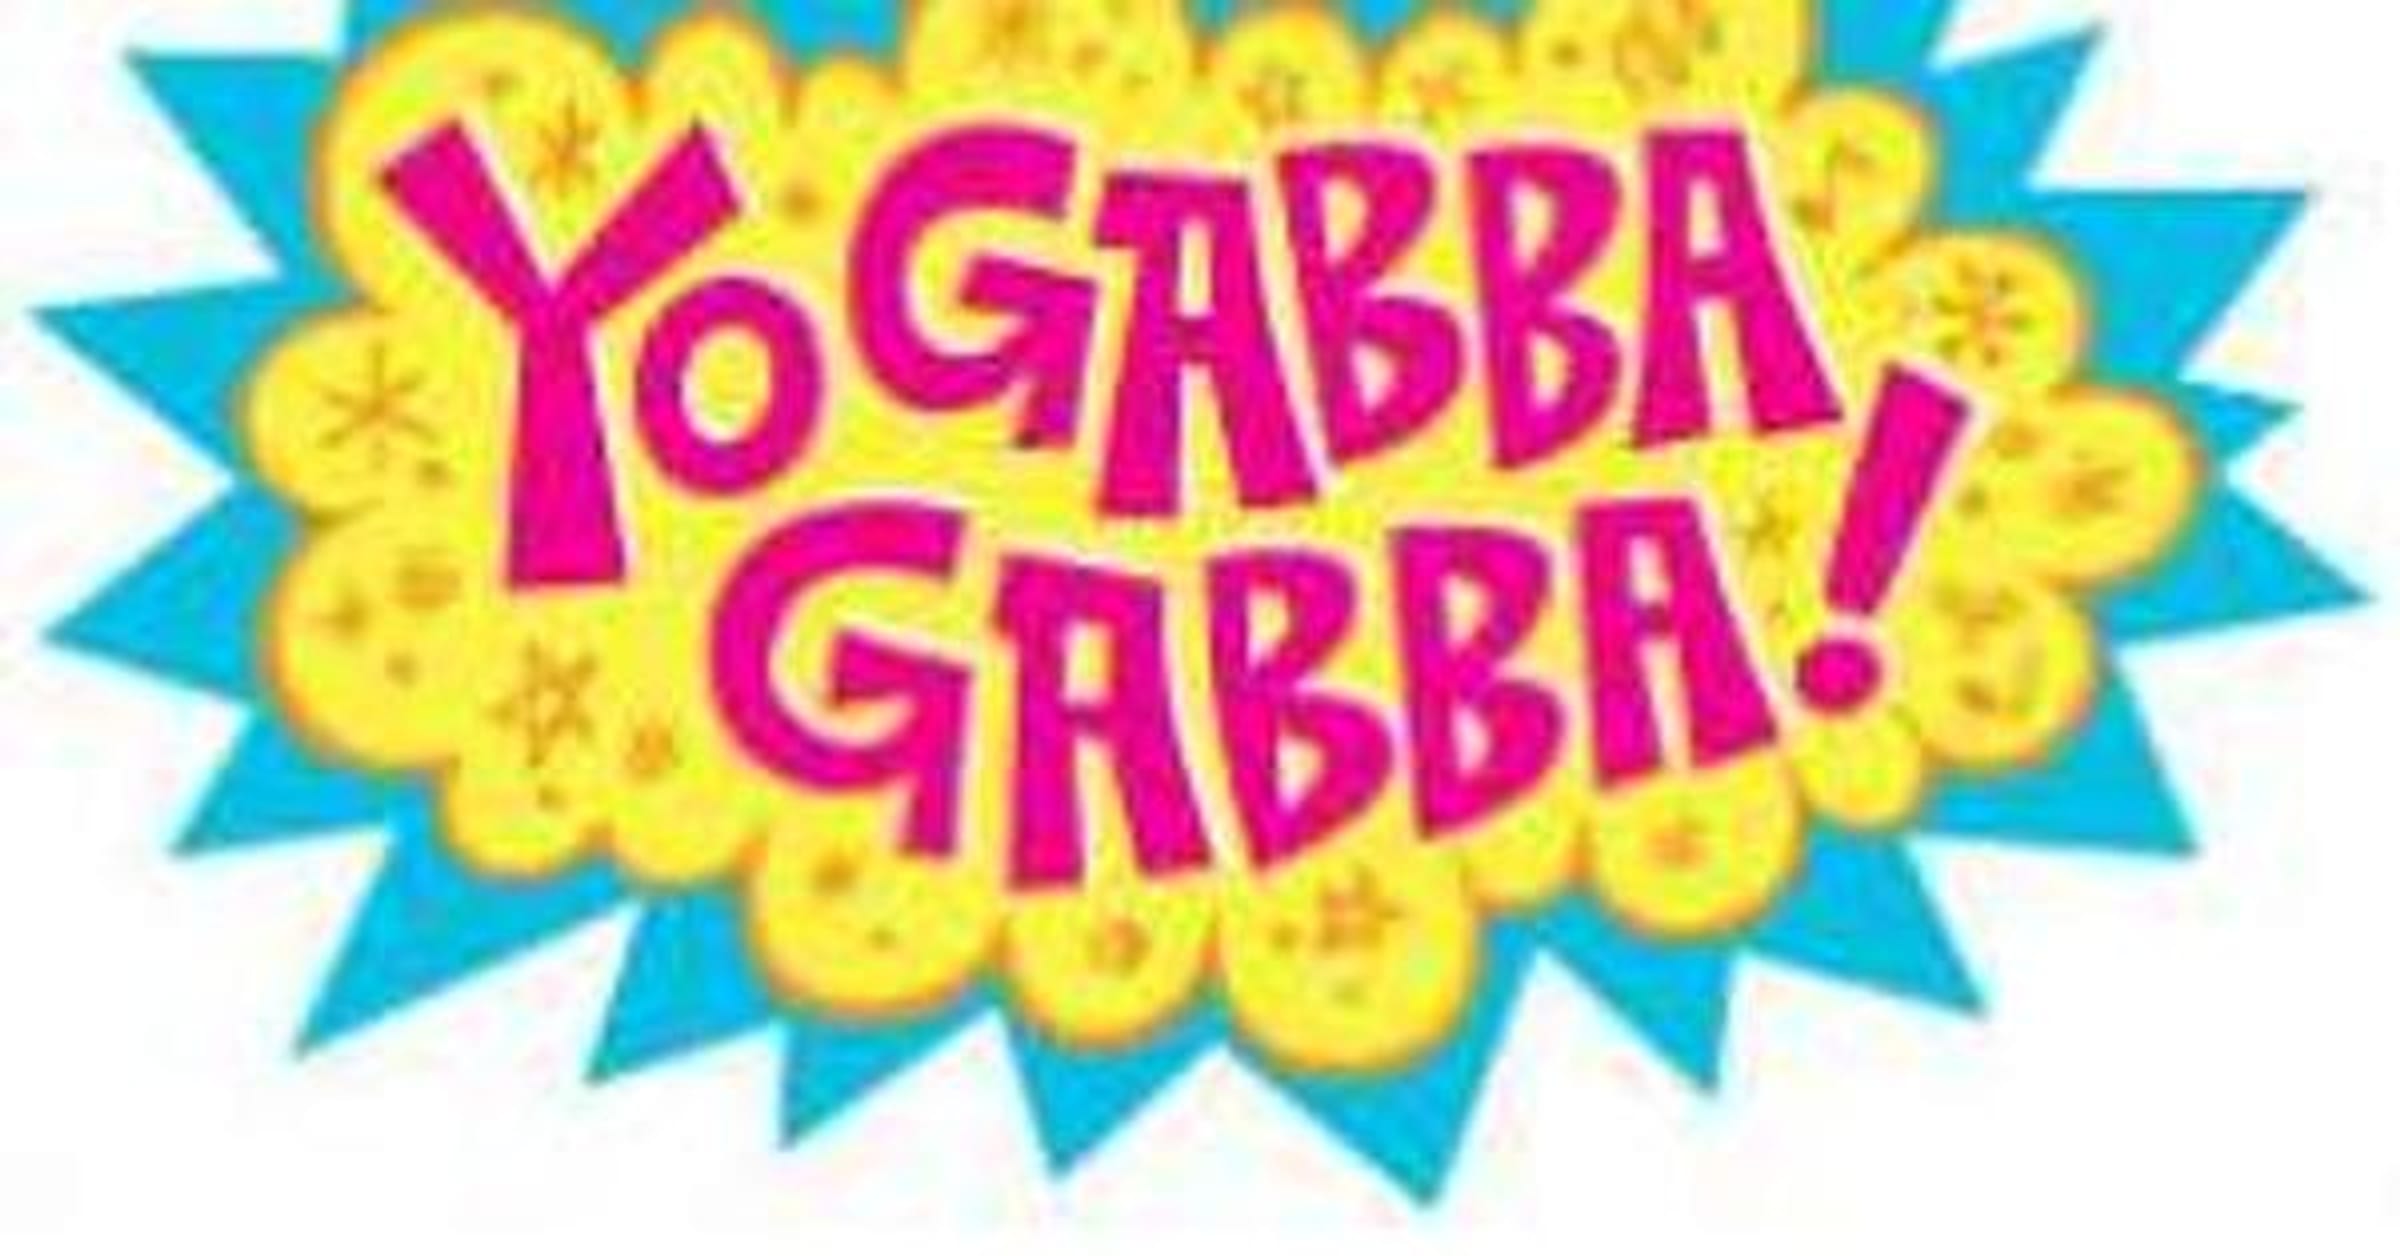 All Yo Gabba Gabba! Episodes  List of Yo Gabba Gabba! Episodes